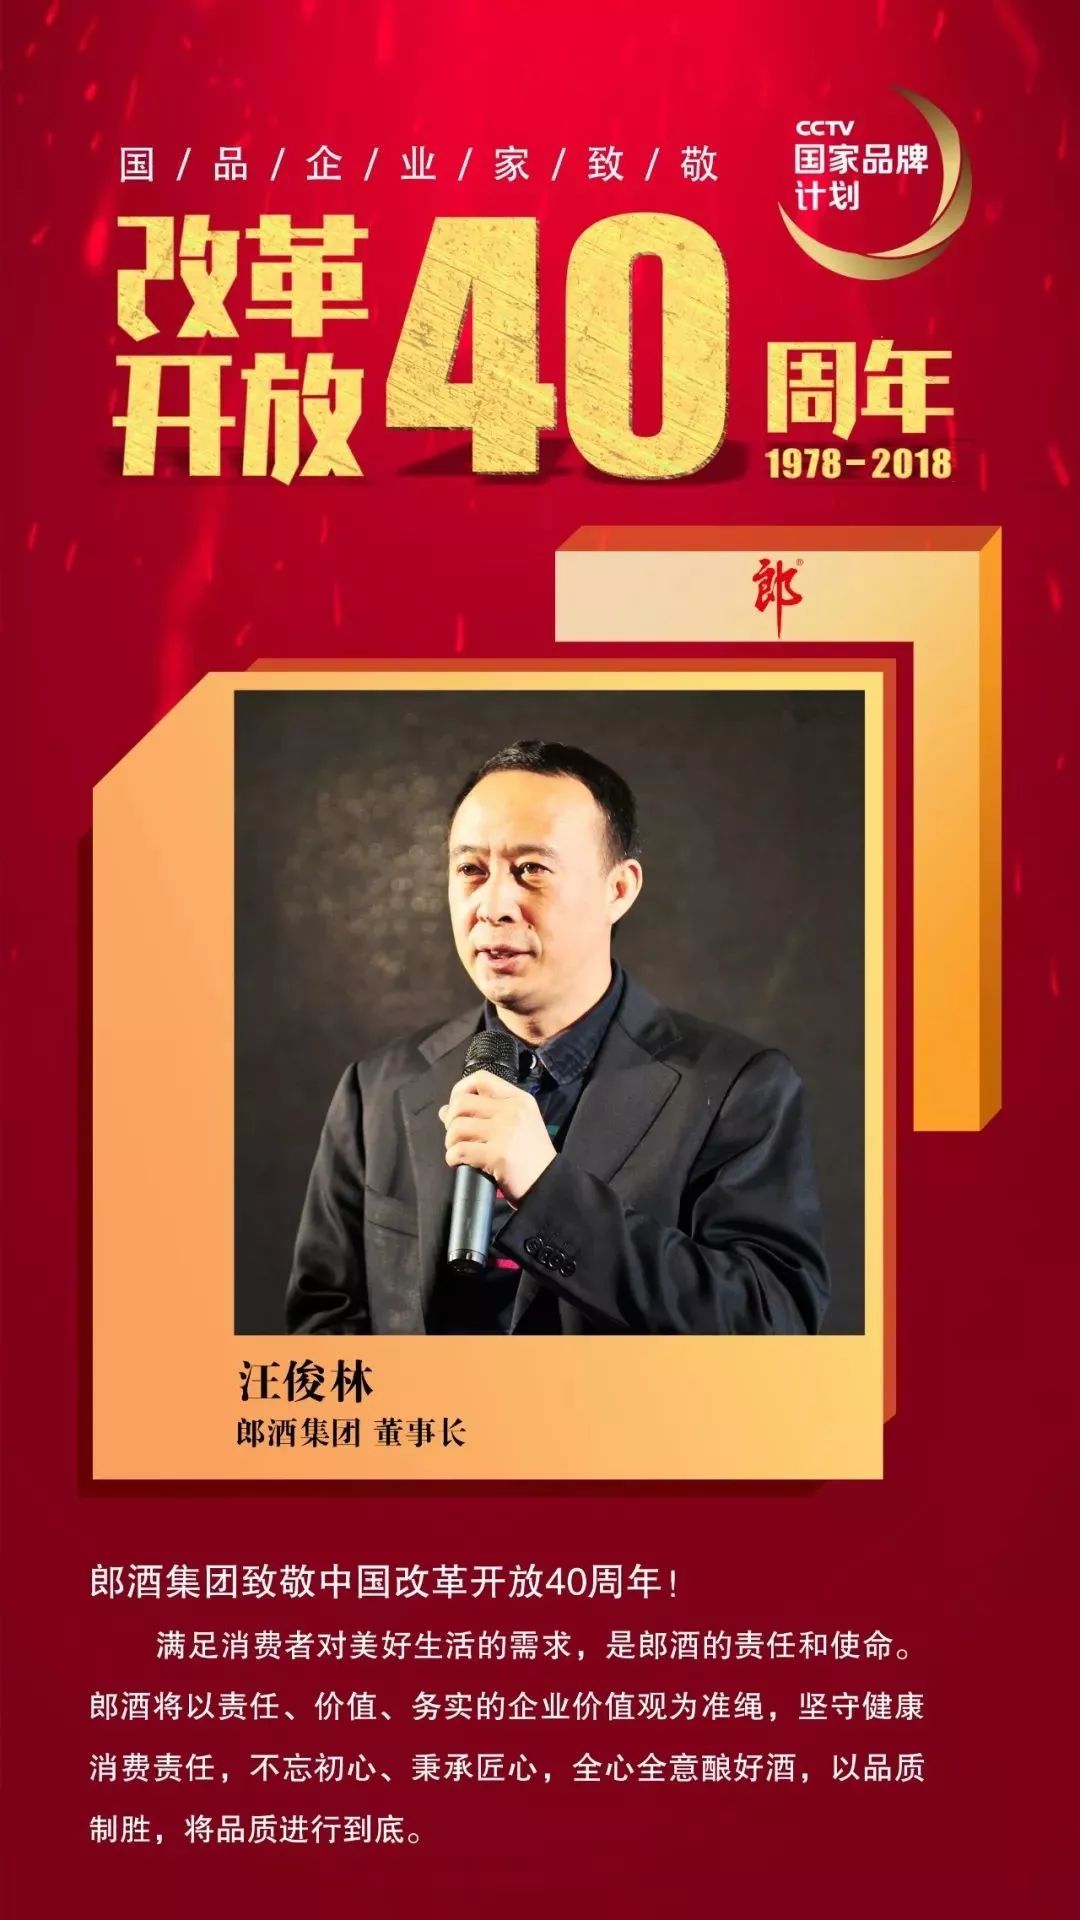 国品企业家,郎酒集团董事长汪俊林 致敬改革开放40周年